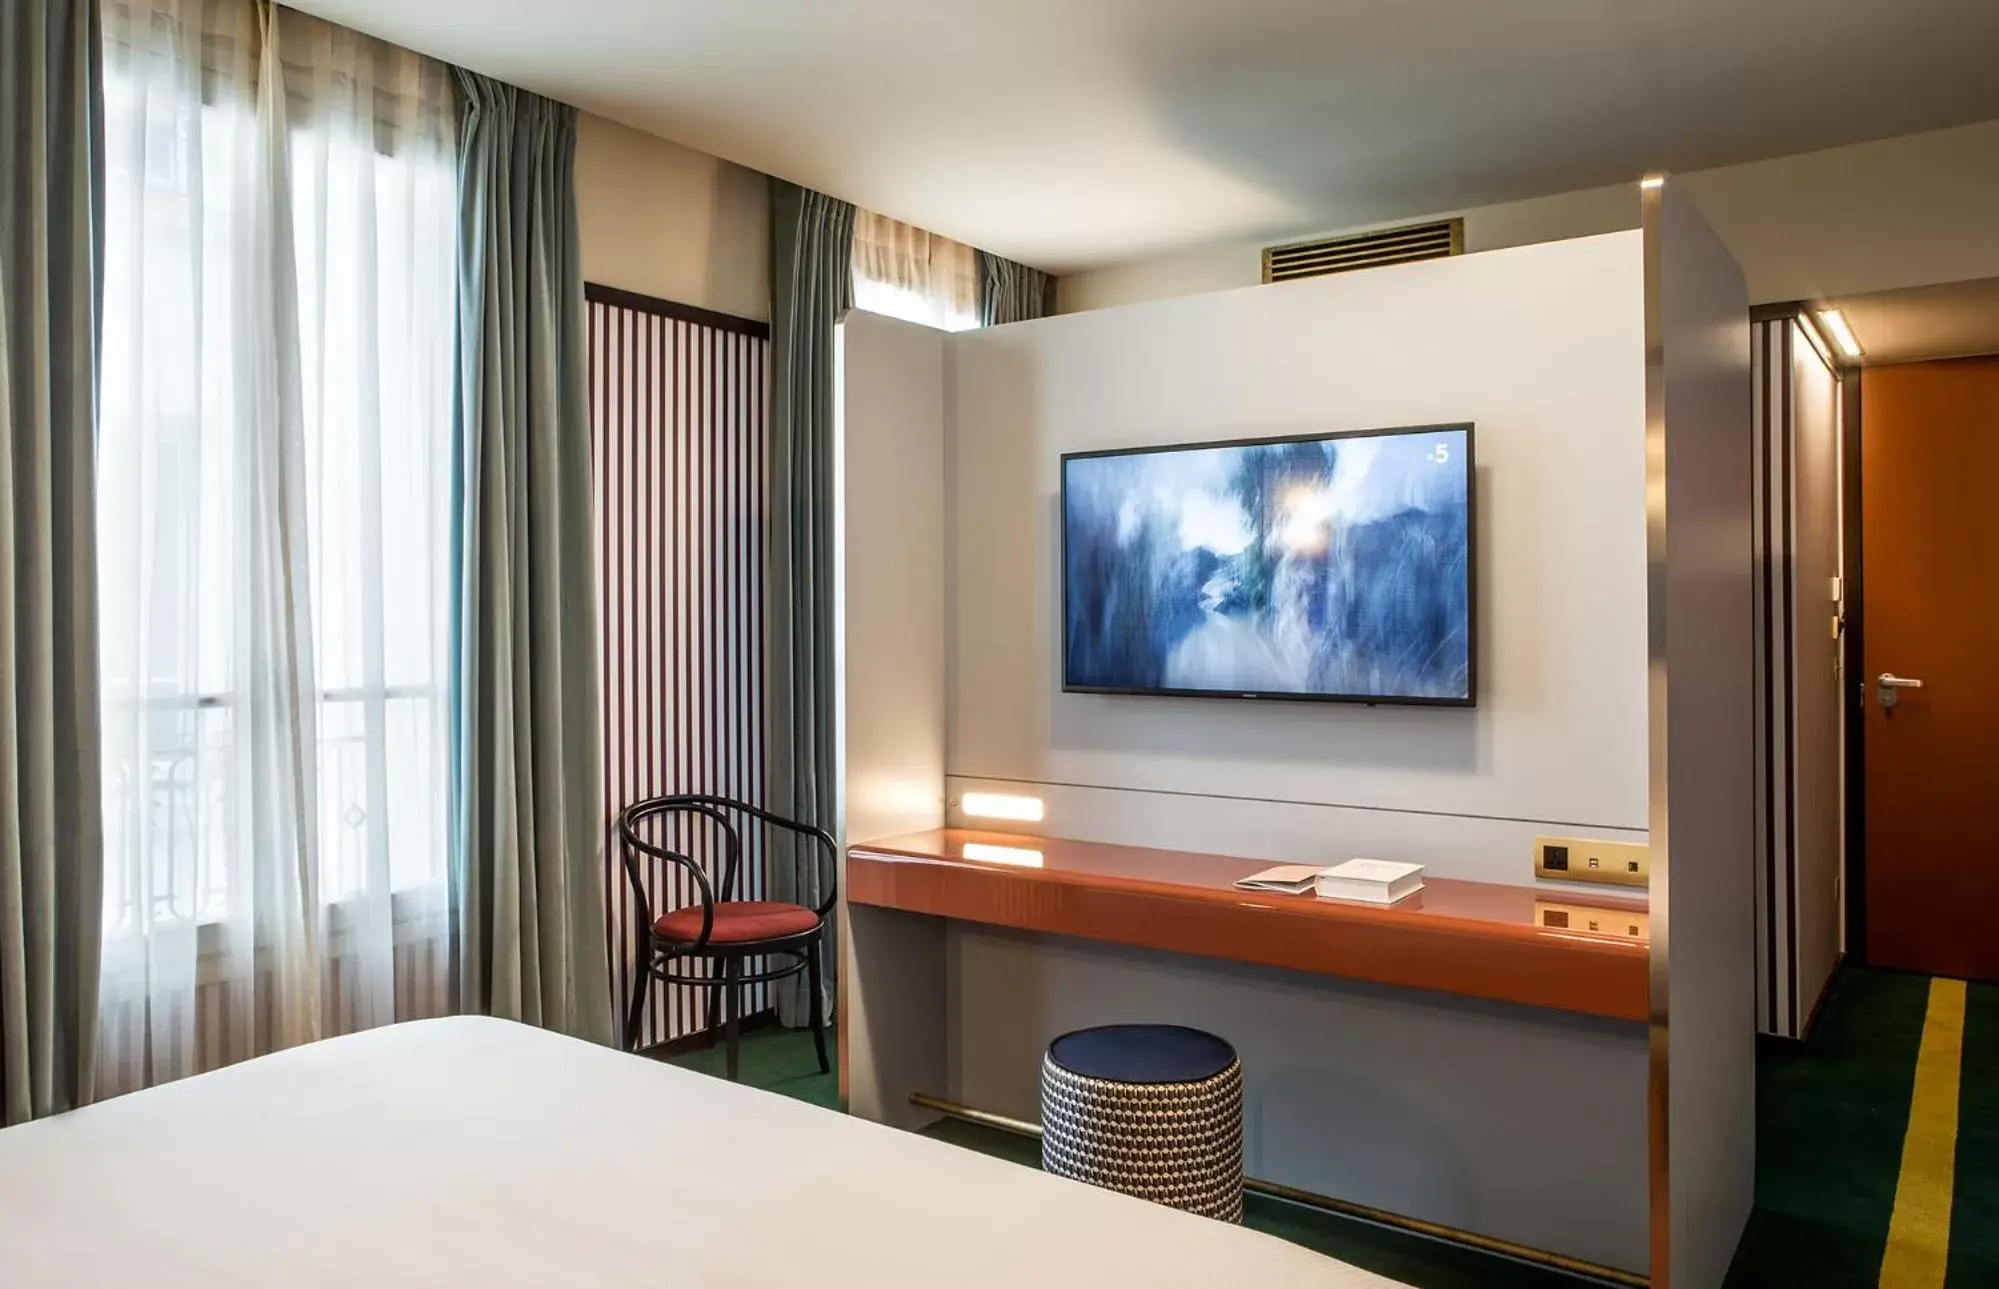 Bed, TV/Entertainment Center in Hôtel du Rond-point des Champs-Élysées - Esprit de France